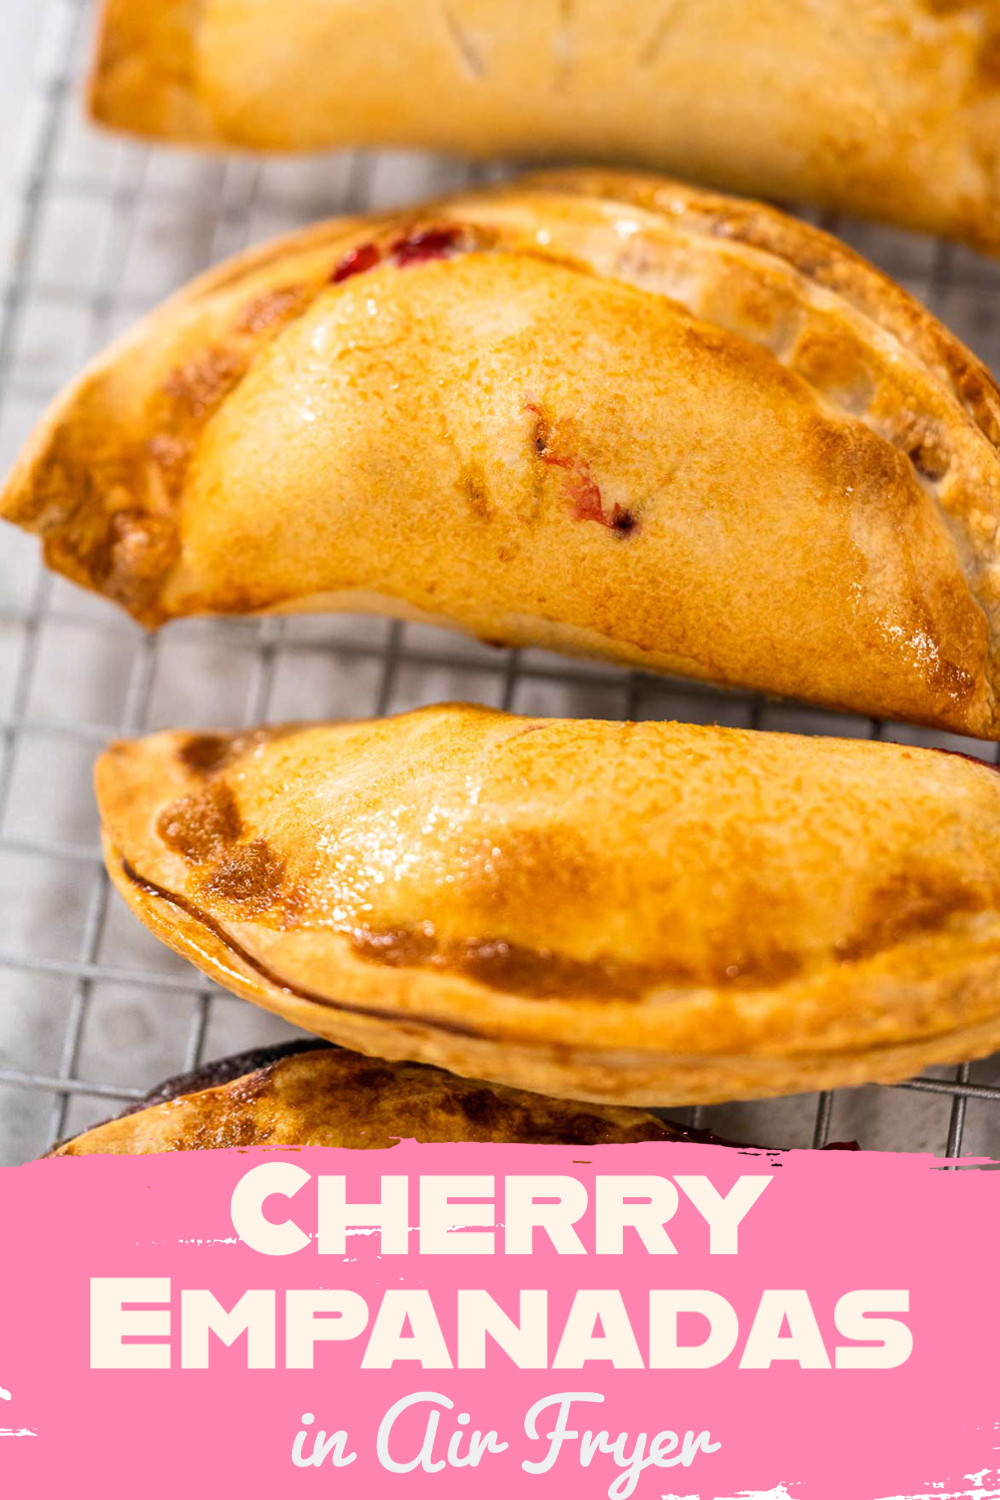 Cherry Empanadas in Air Fryer